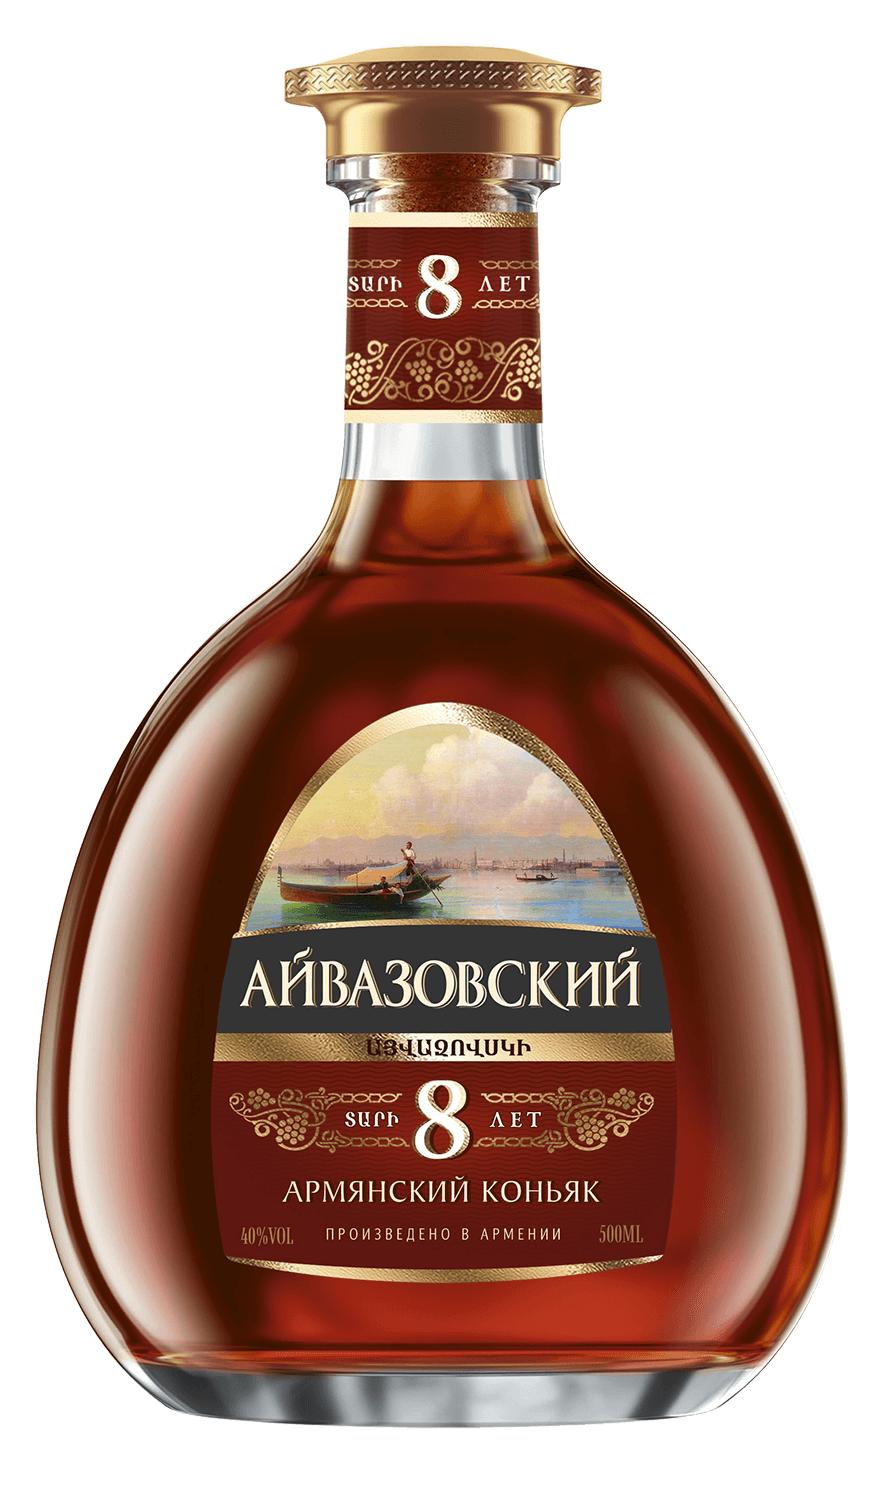 ararat otborny armenian brandy 7 y o gift box Aivazovsky Armenian Brandy 8 Y.O. (gift box)